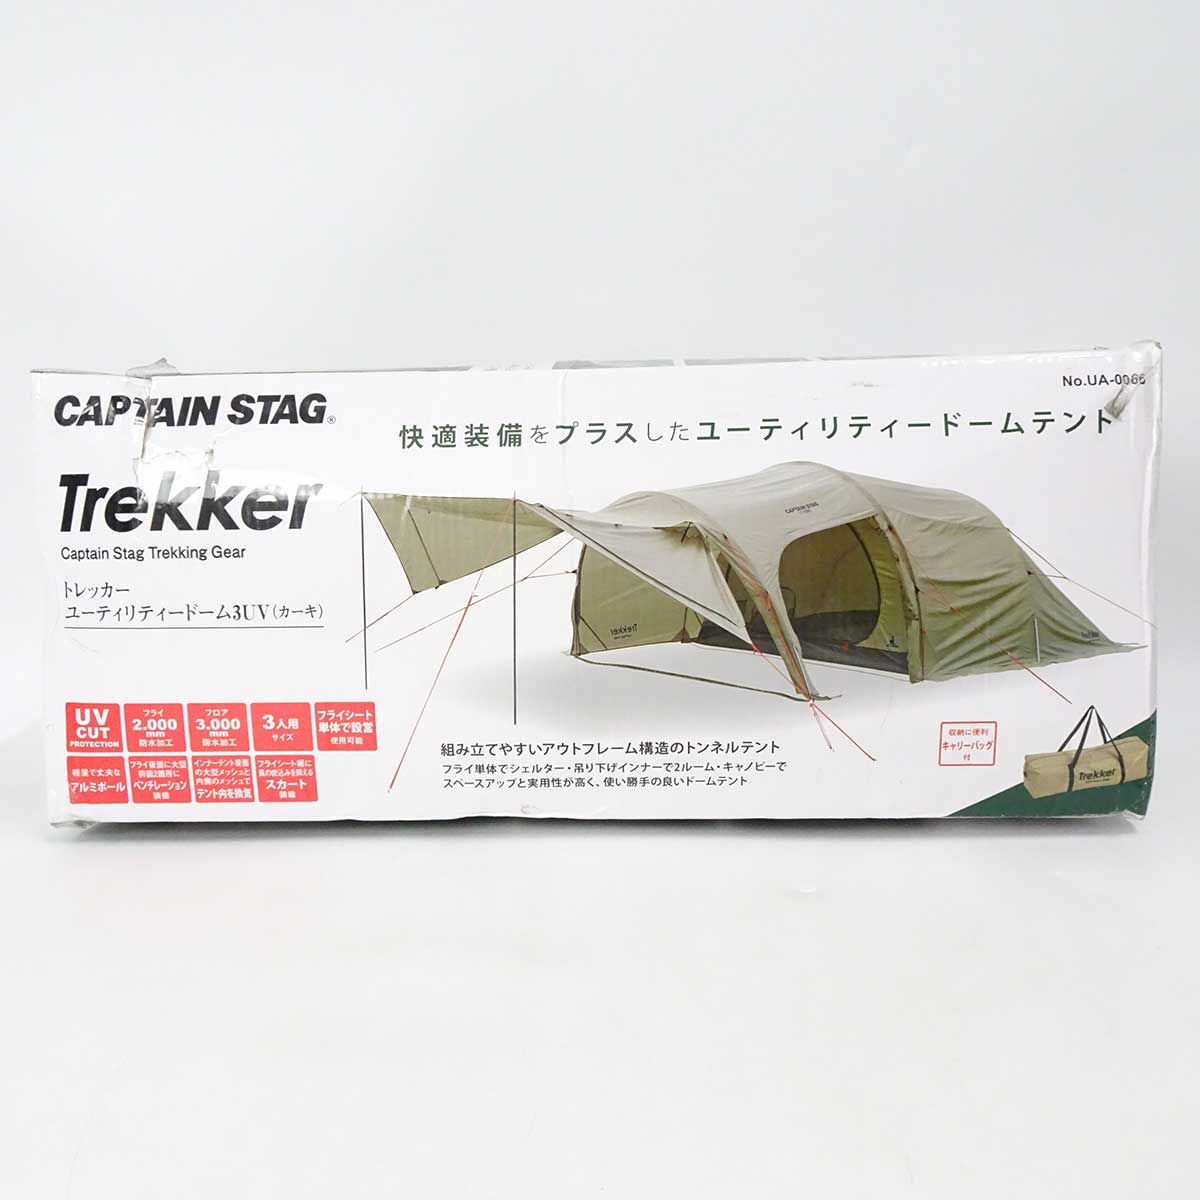 【未使用】キャプテンスタッグ トレッカー ユーティリティードーム3UV 3人用テント カーキ UA-0066 アウトドア キャンプ